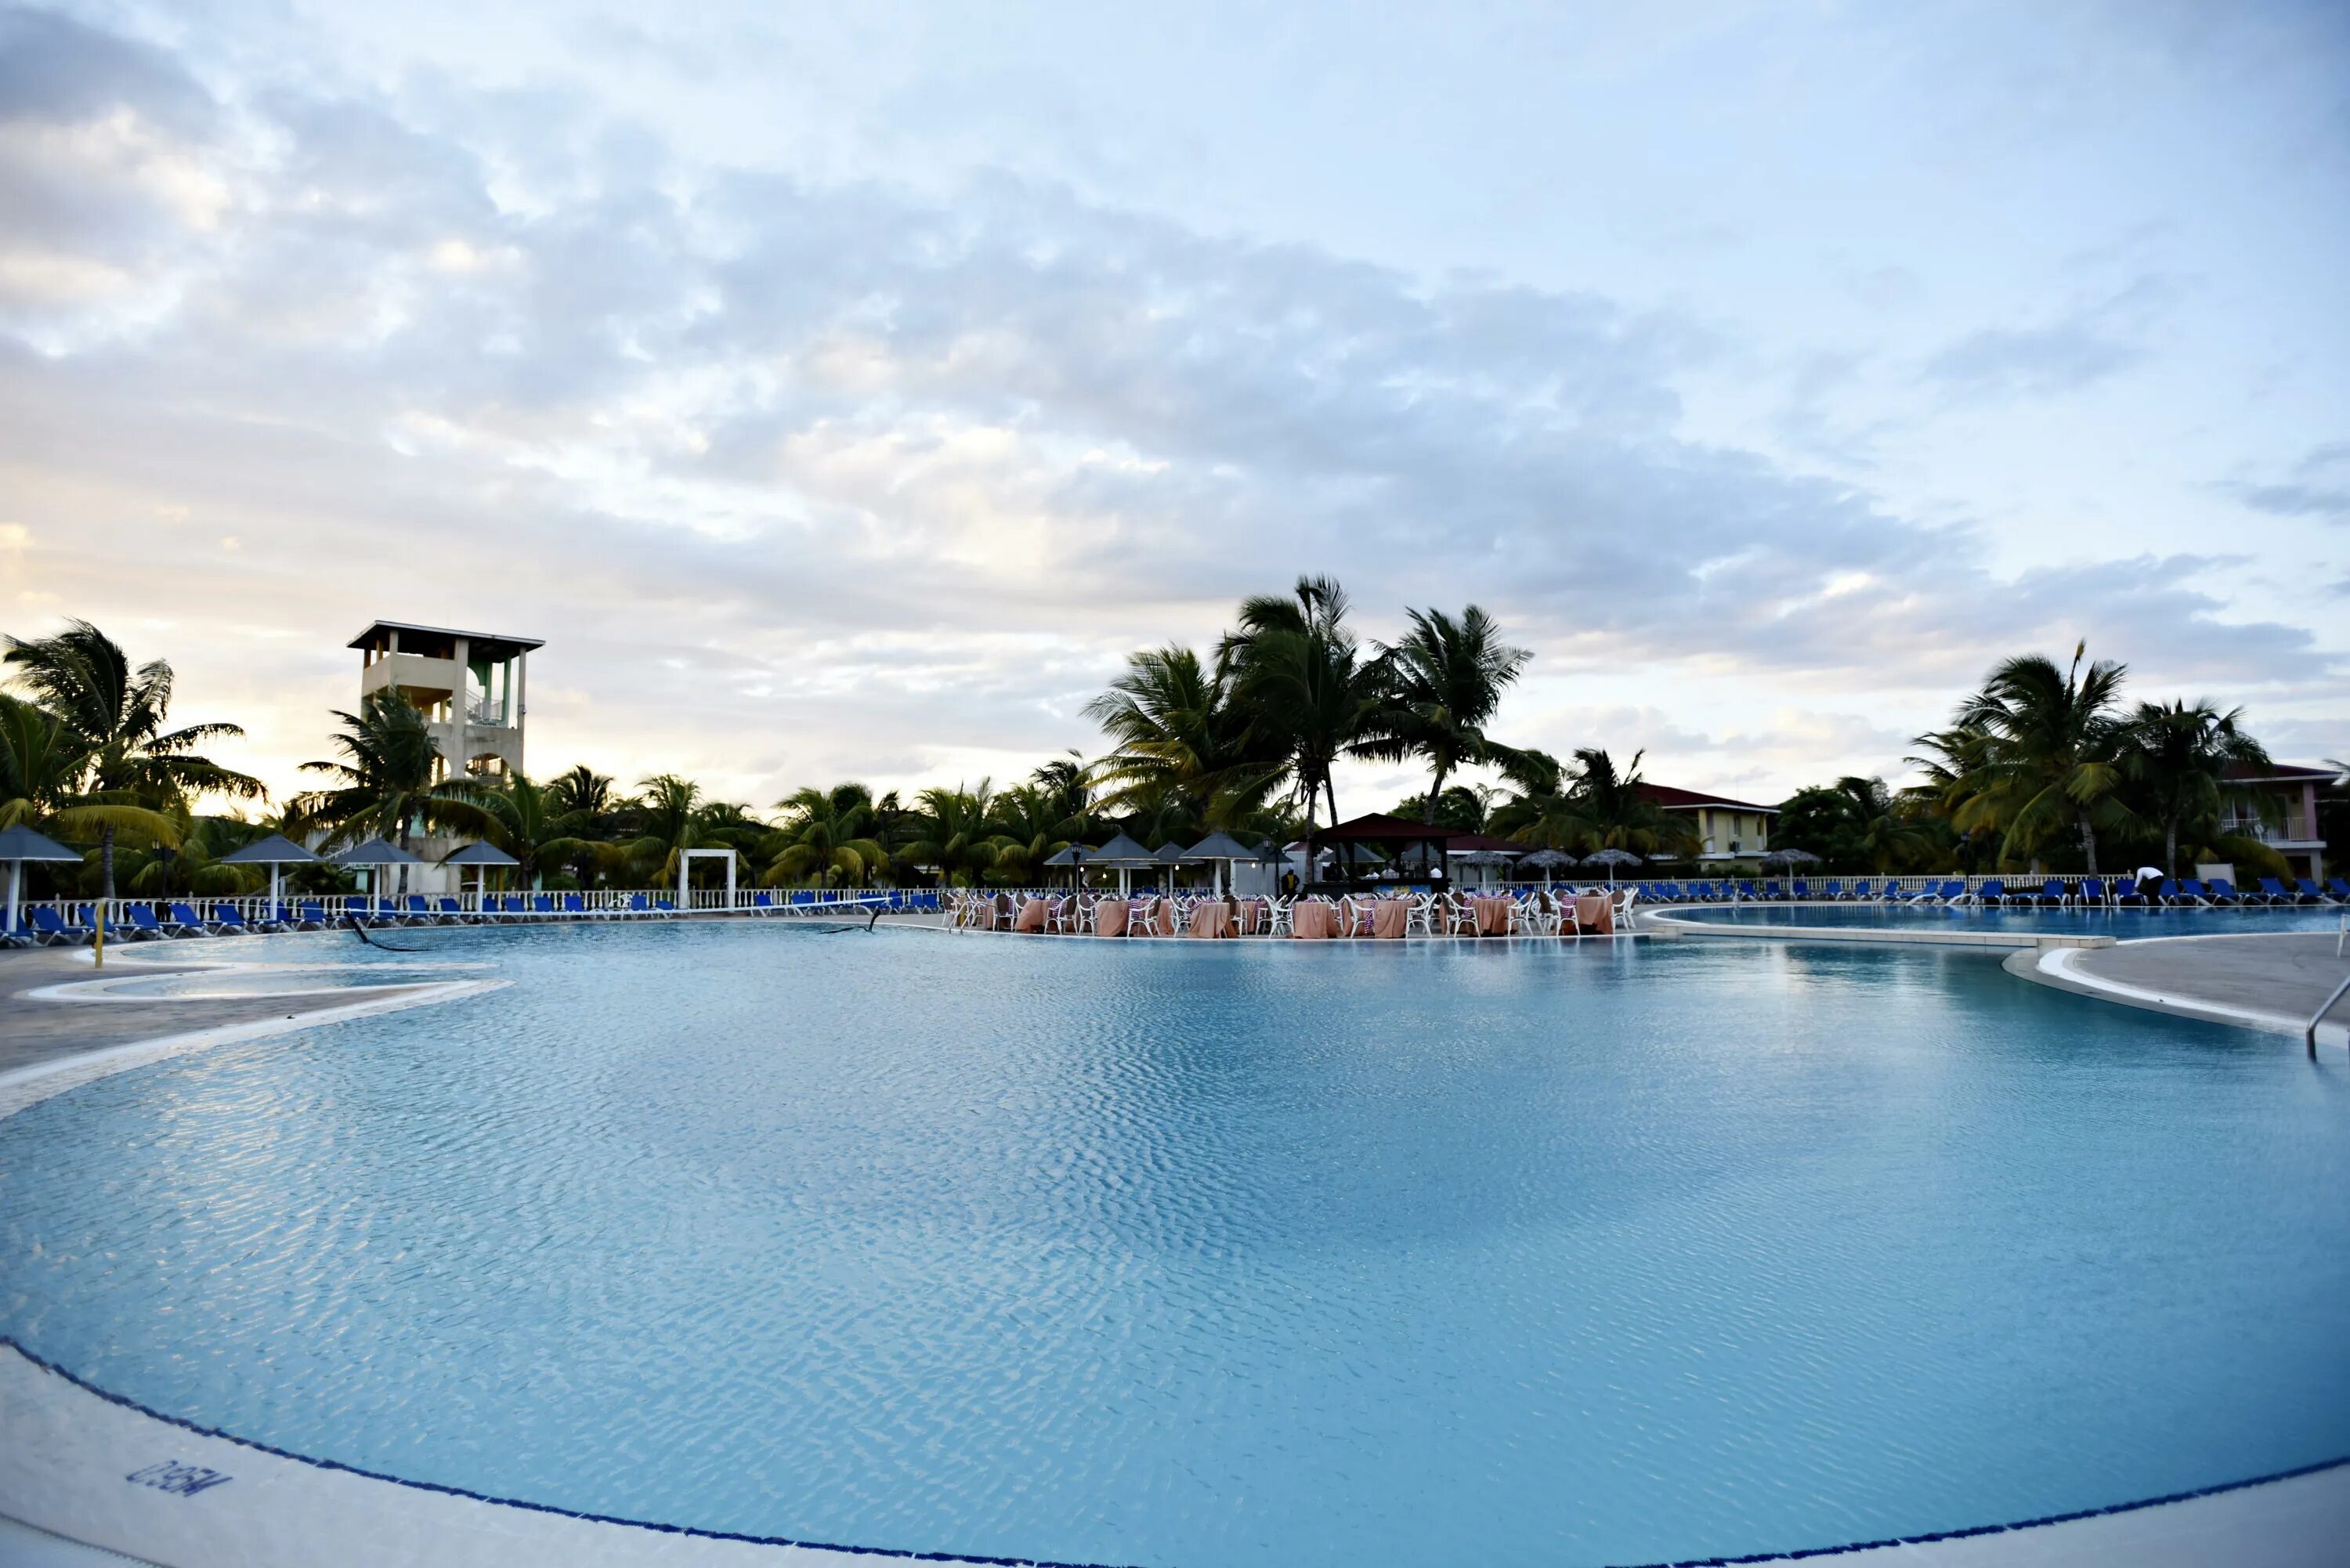 Отель Memories Caribe Beach Resort. Кайо Коко отель Меморис Карибе. Меморис Карибы Куба отель. Memories Caribe Beach Resort 4 Кайо Коко. Меморис кайо коко